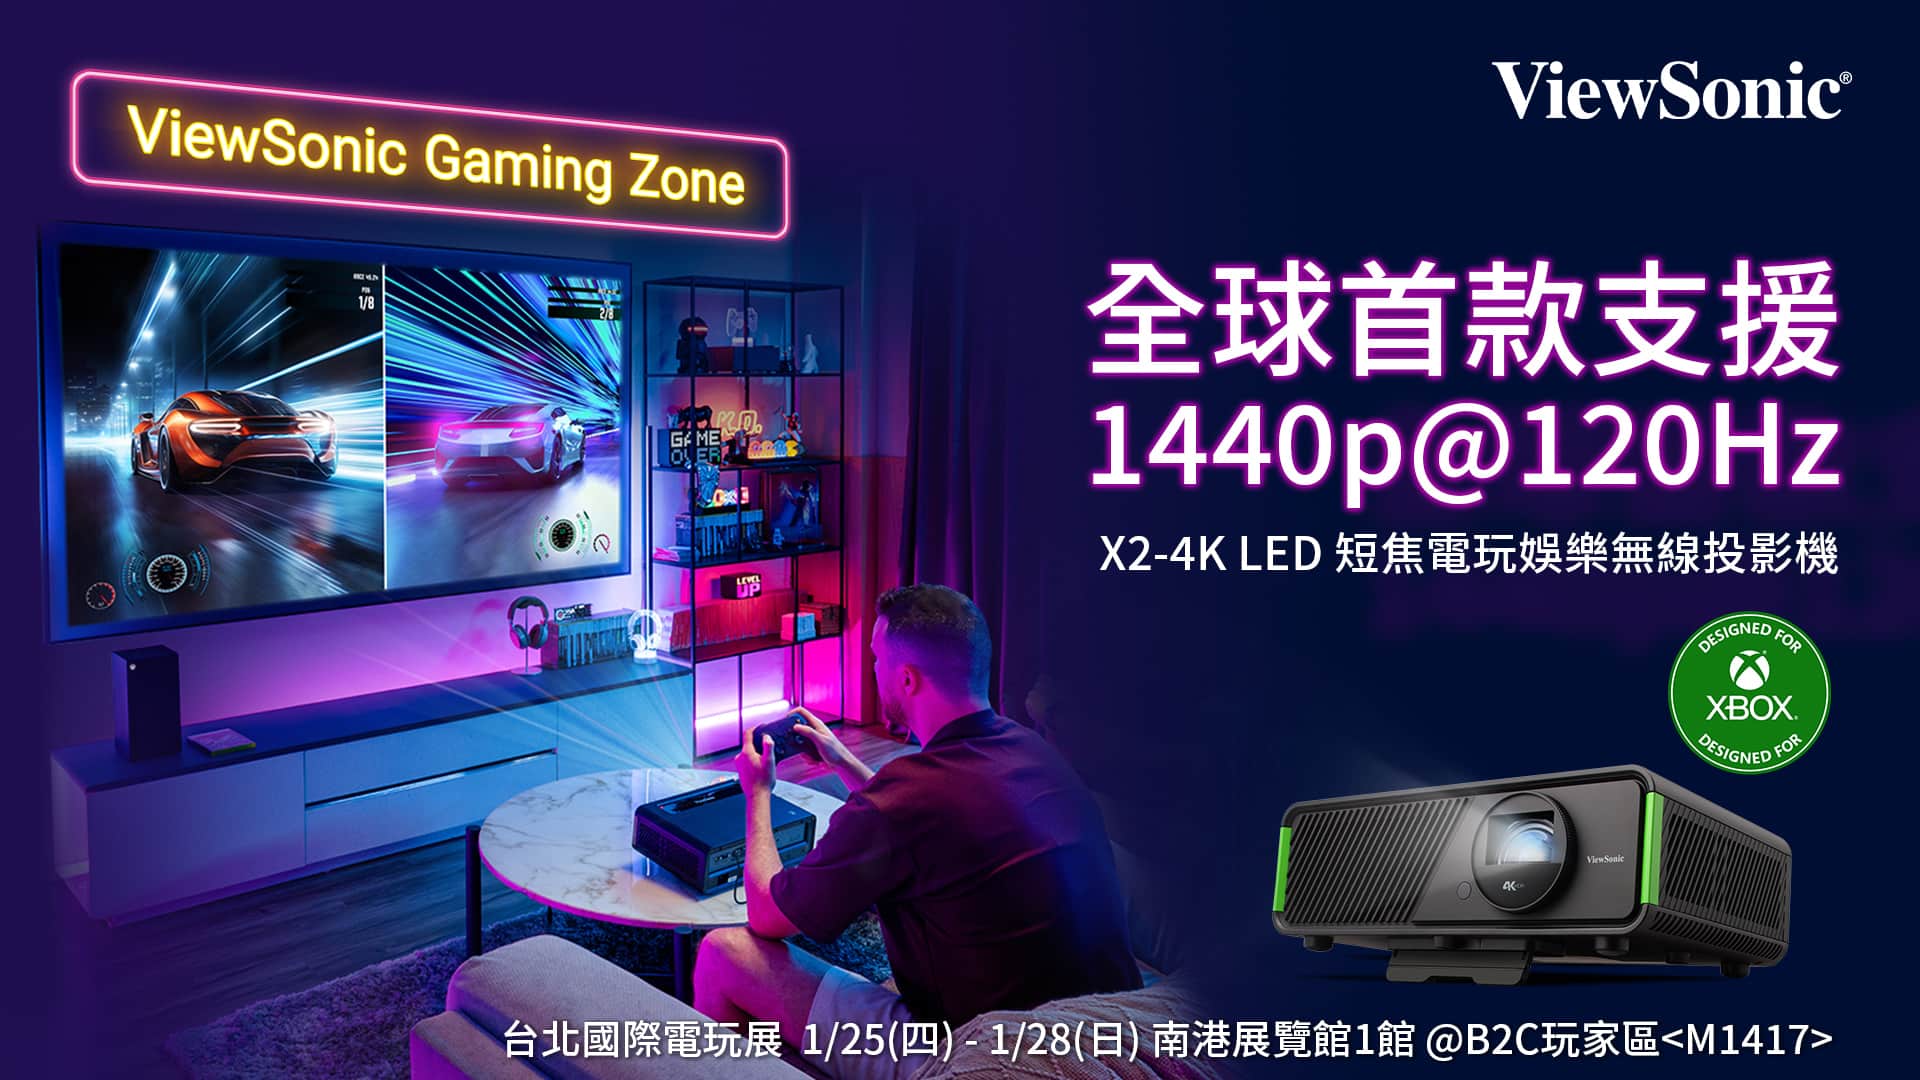 【新聞照片1】ViewSonic-將於台北國際電玩展亮相多款電玩娛樂投影機，邀玩家體驗大螢幕順暢遊戲快感。